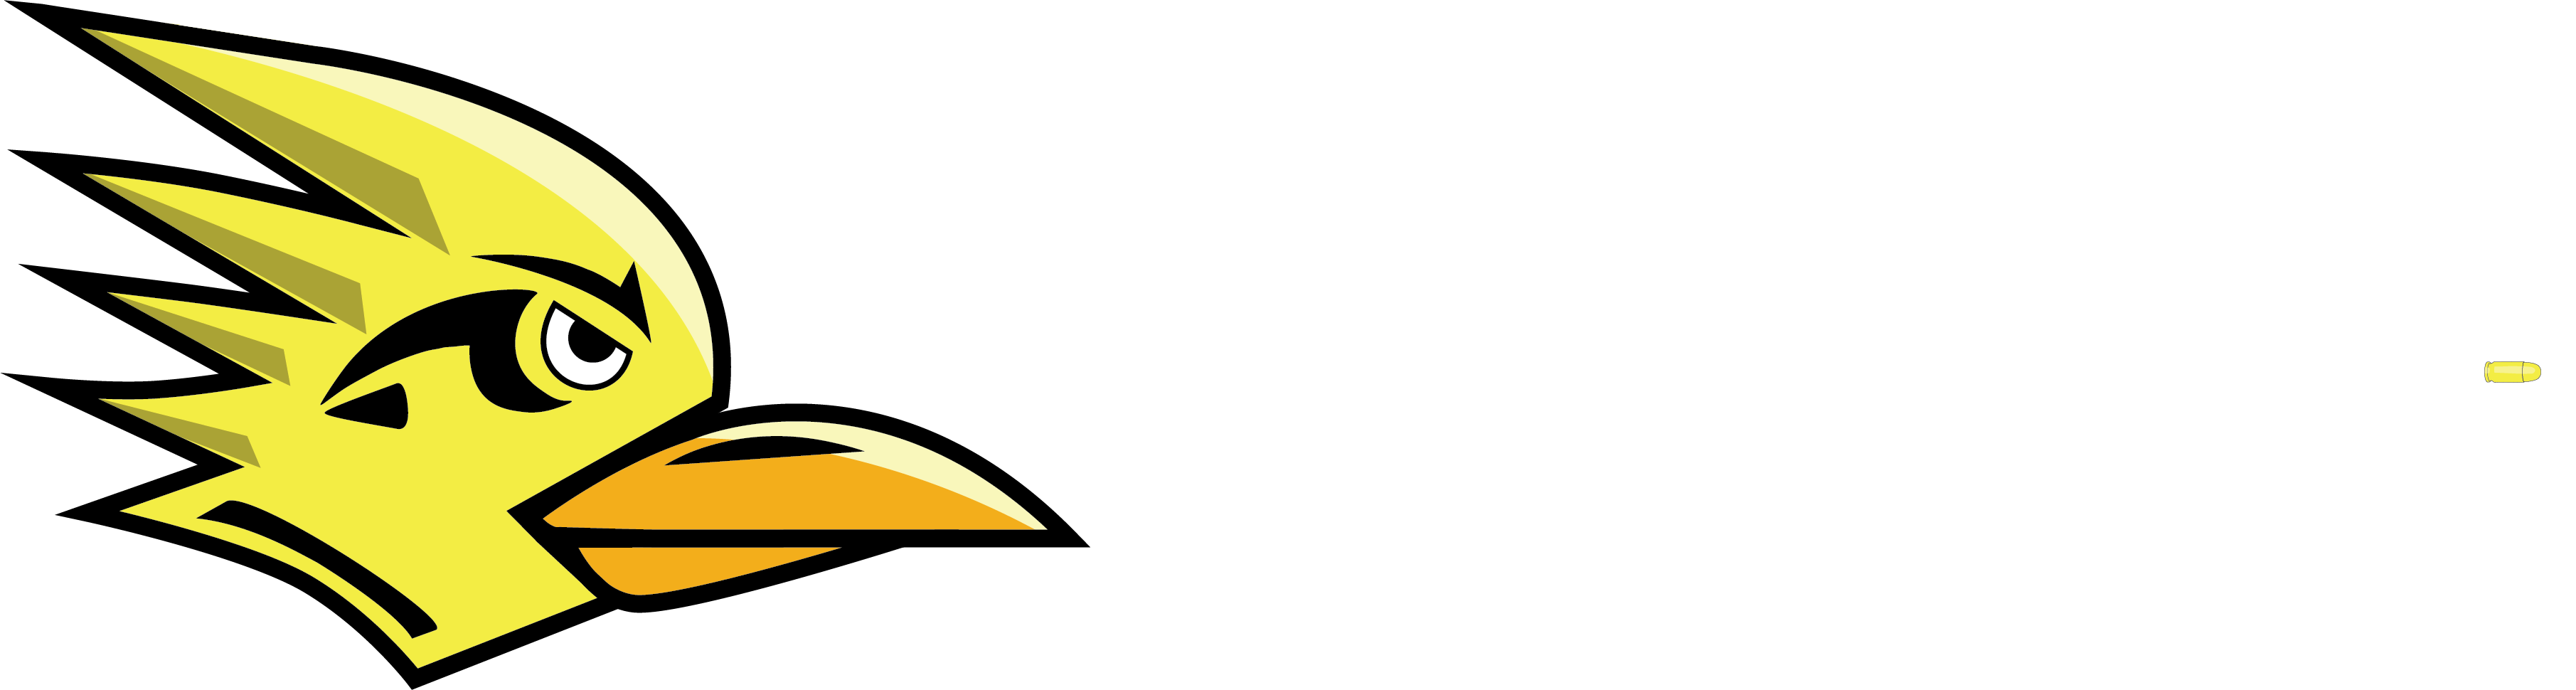 roadrunner clipart road network